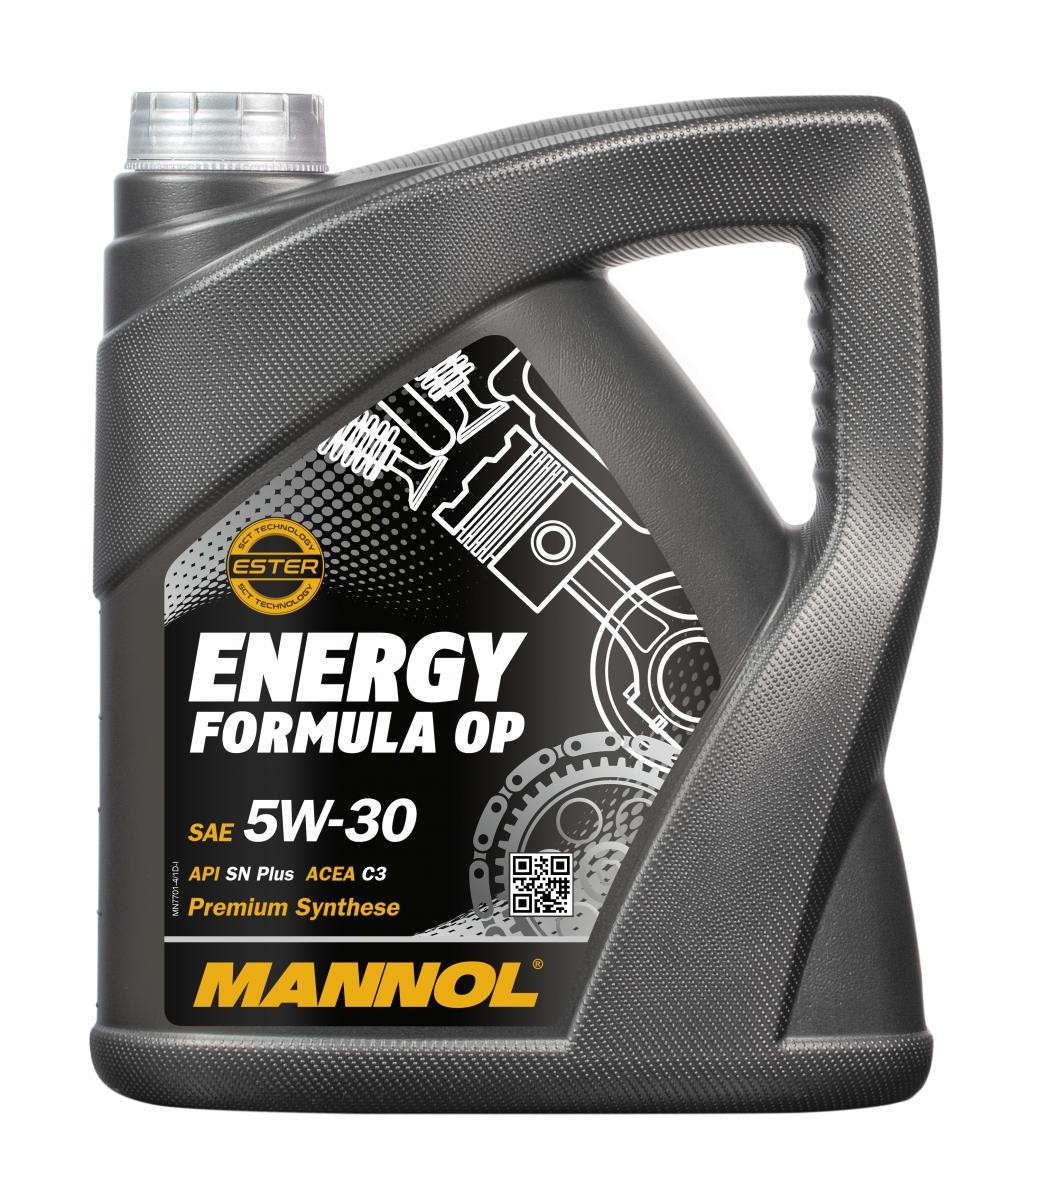 MANNOL MN7701-4 Moottoriöljy 5W-30, 4l, Synteettinen öljy Suzuki alkuperäistä laatua